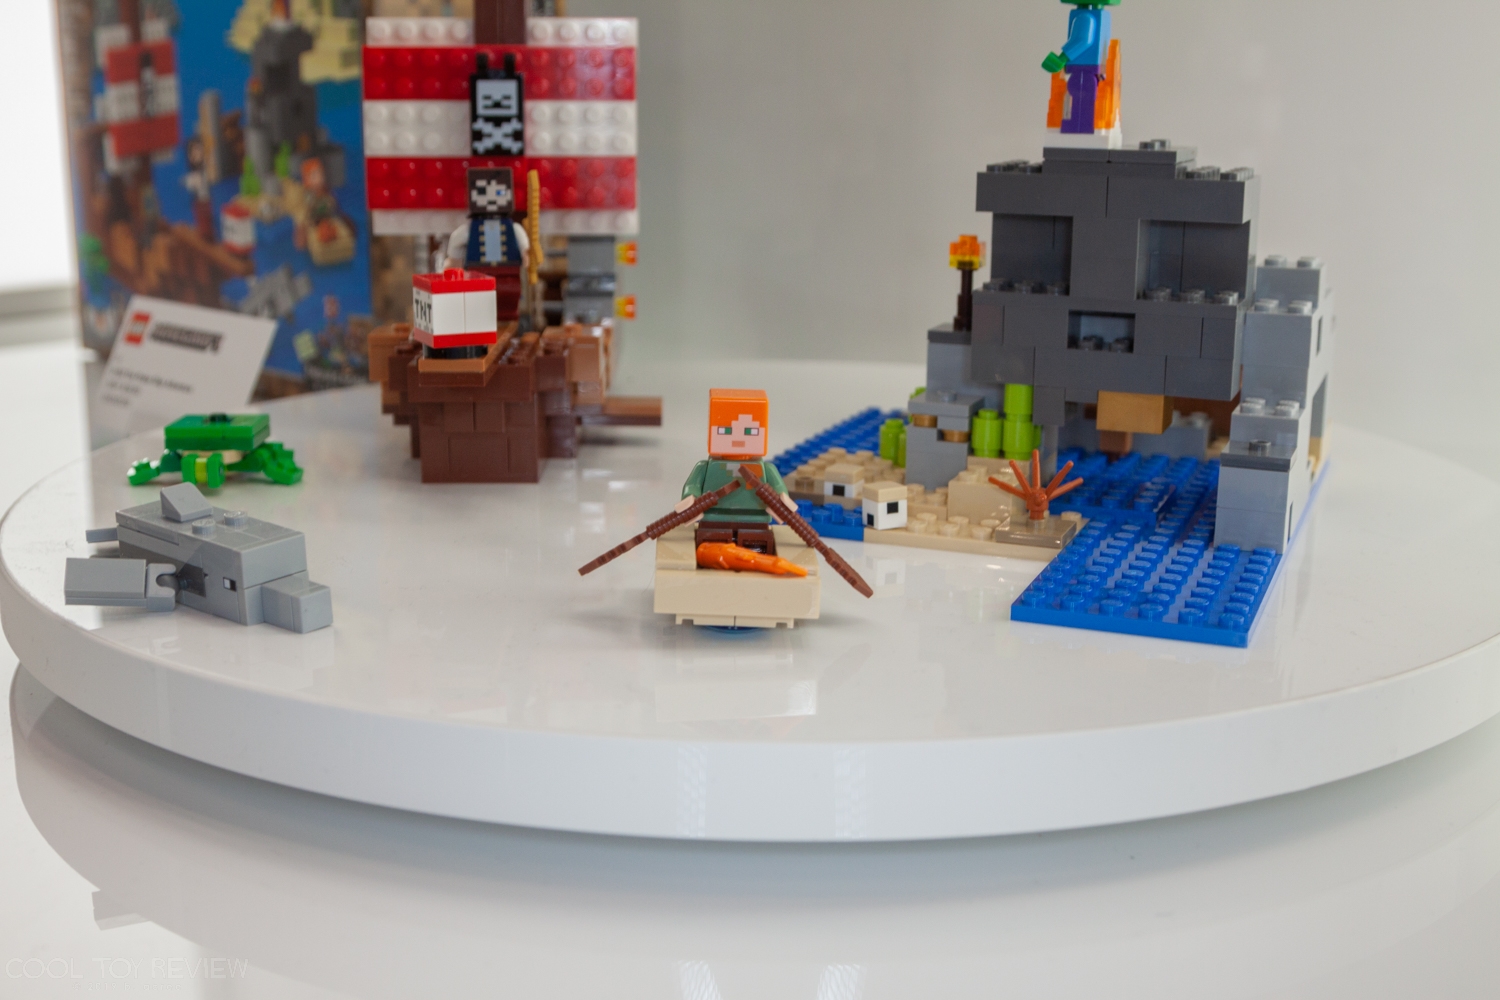 LEGO-Toy-Fair-2019-089.jpg